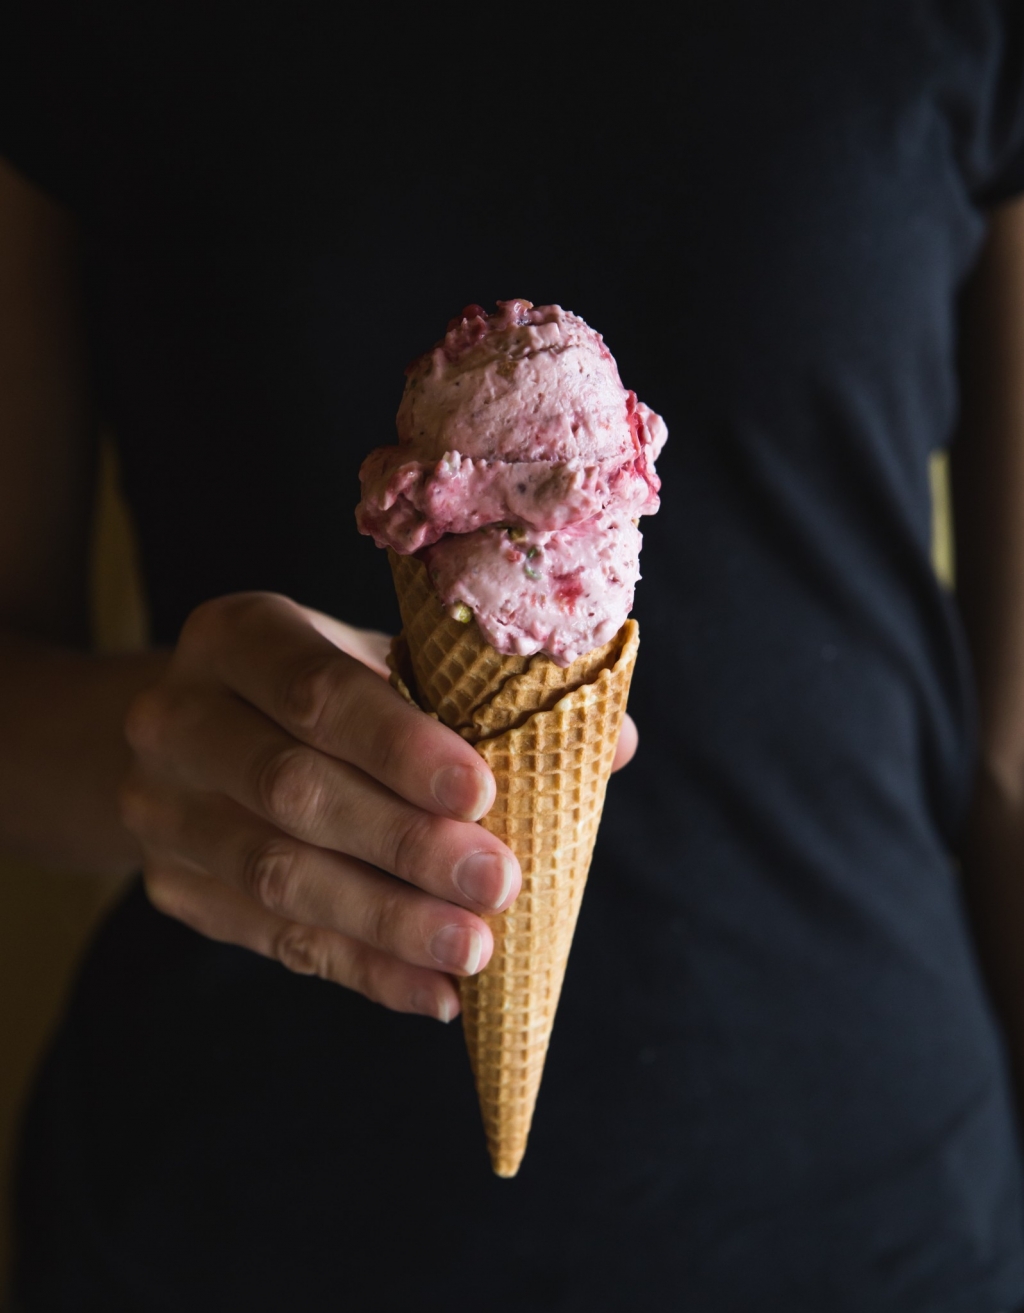 Jahodovo-malinová zmrzlina s pistáciami